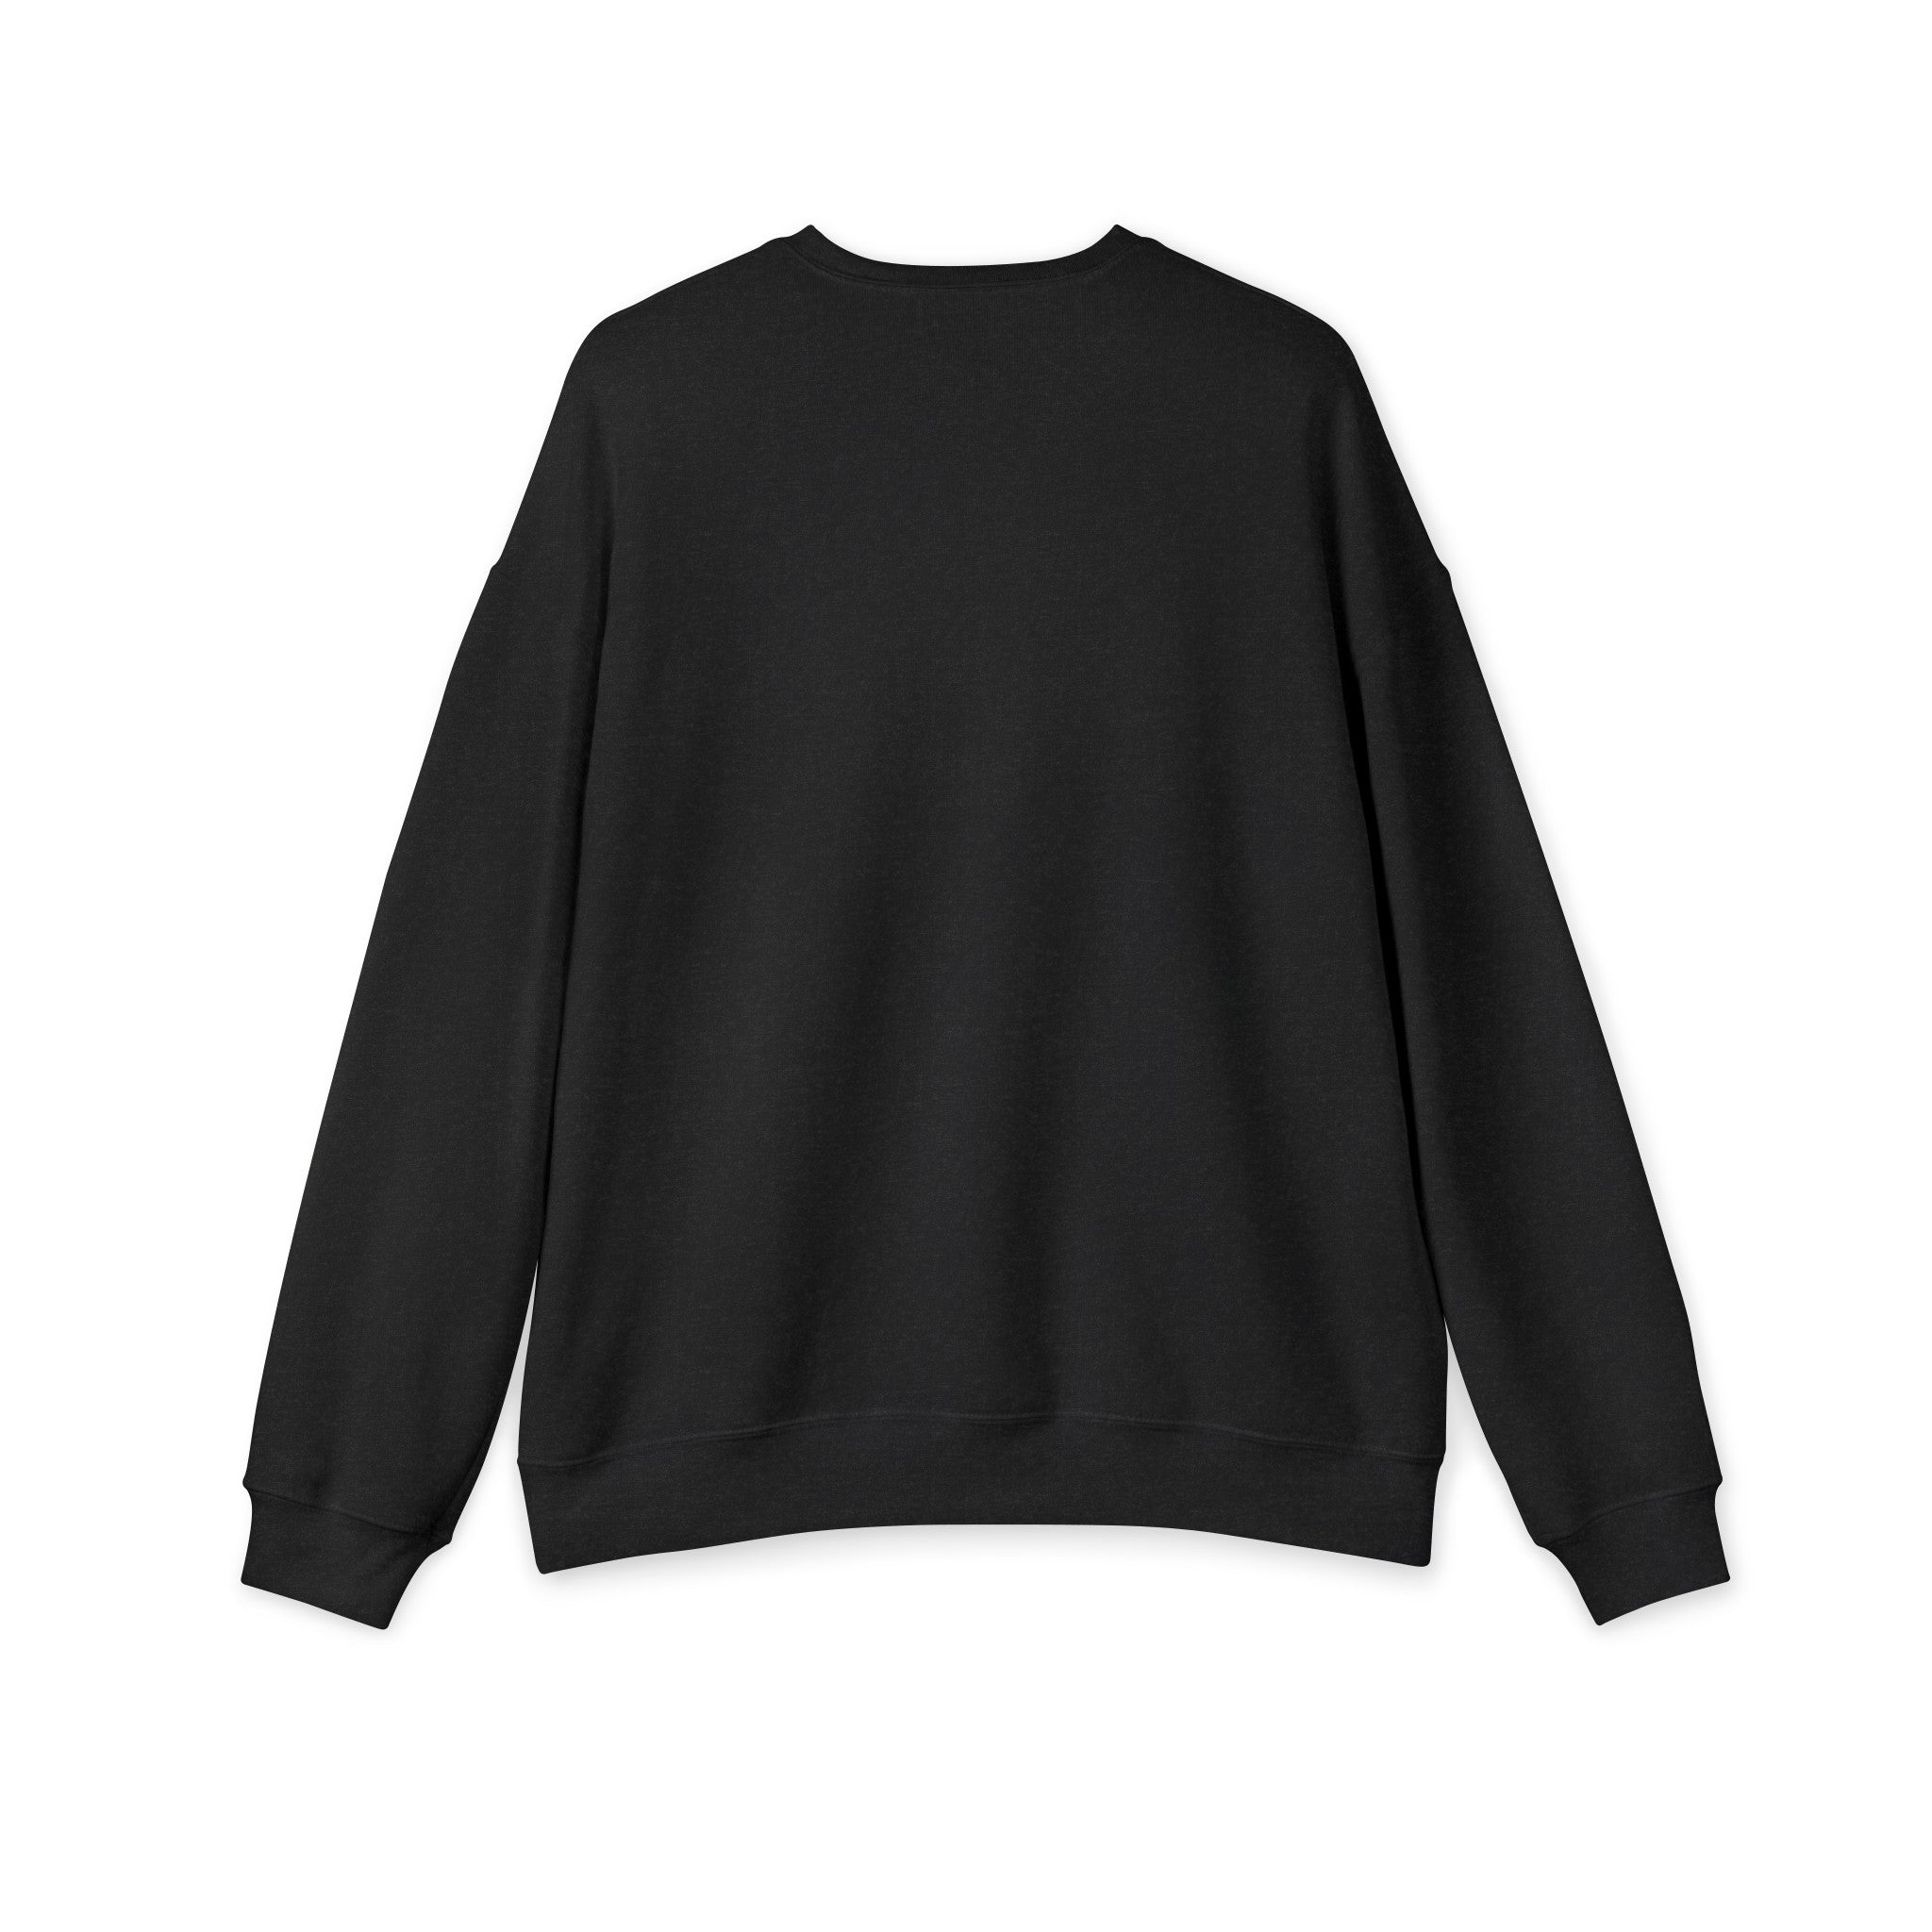 Varsity MOM 2024 - Unisex Drop Shoulder Sweatshirt - Mother’s Day Gift! 🎁